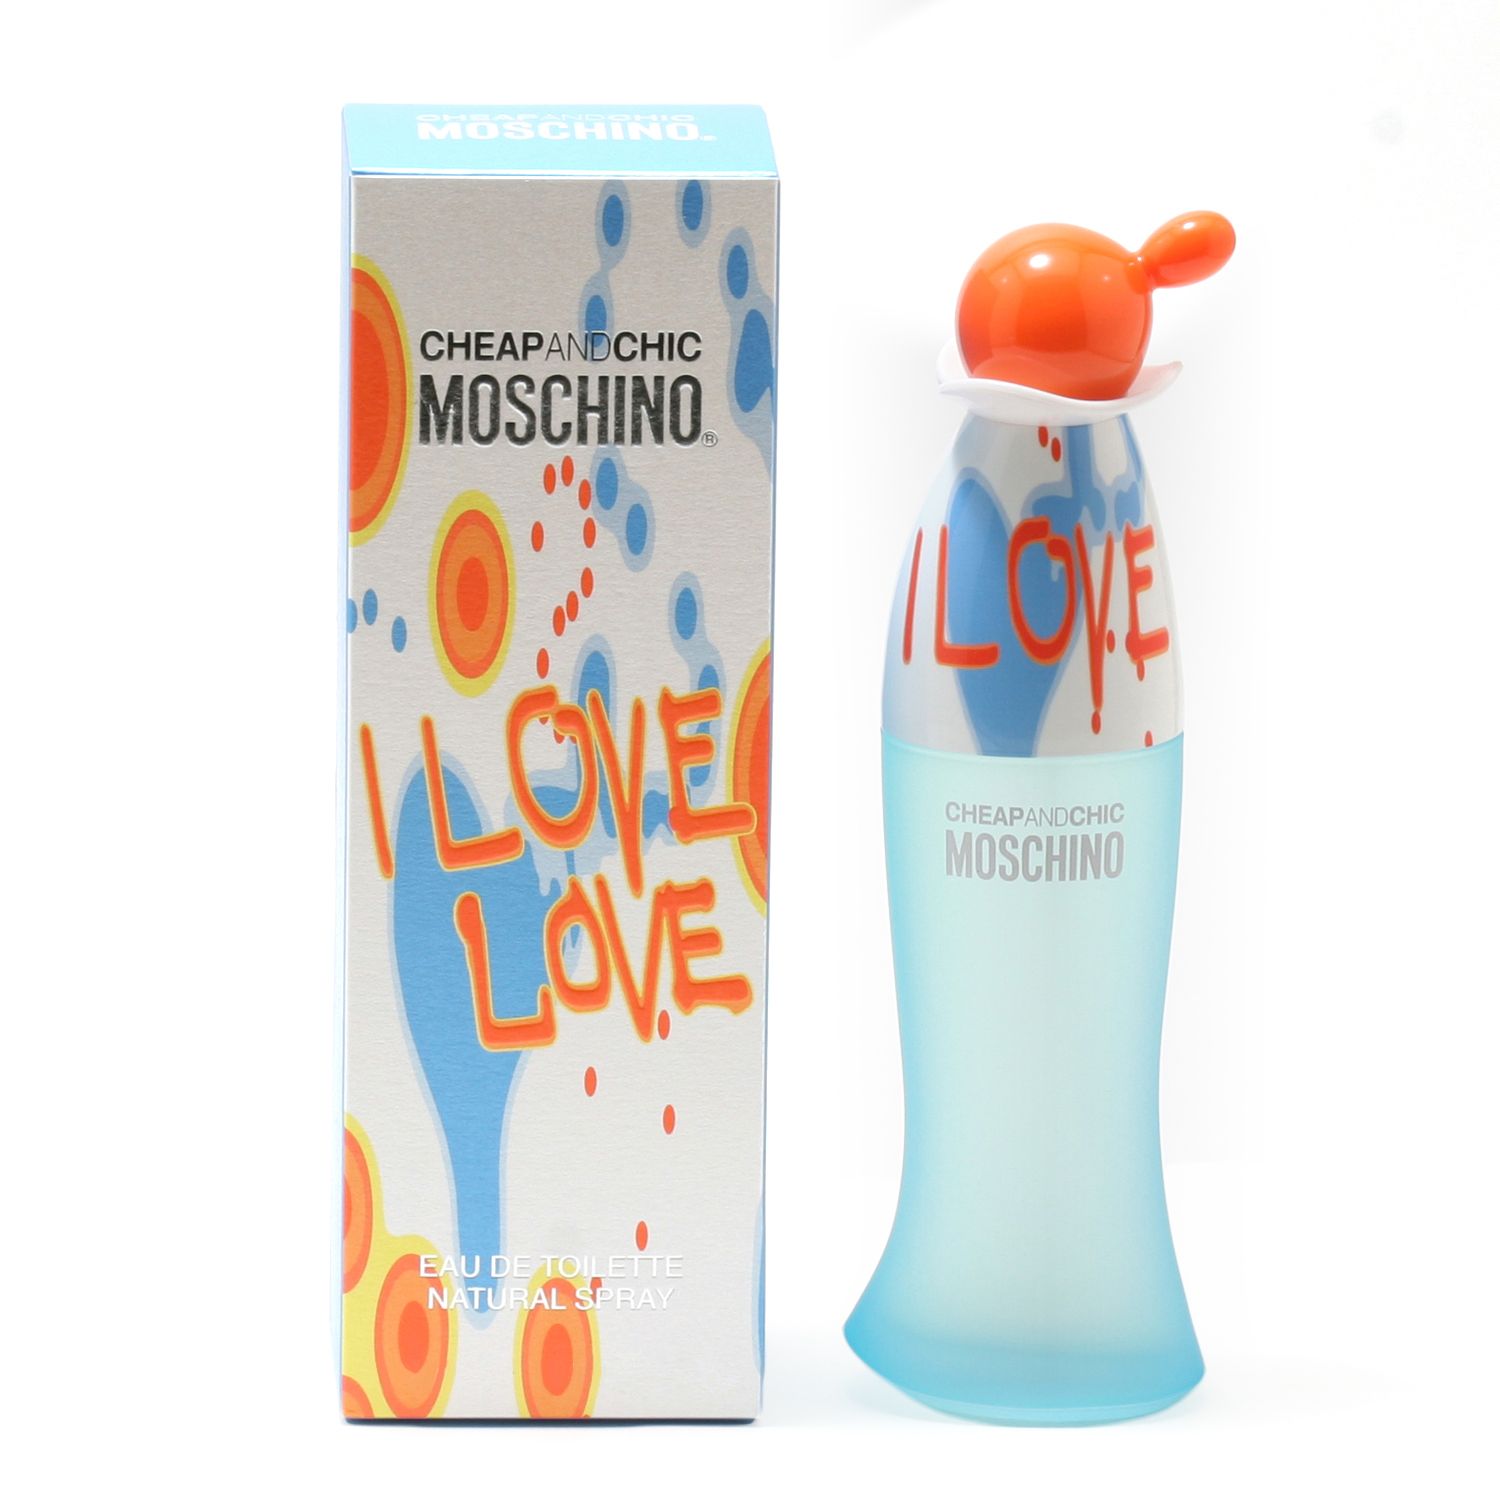 love moschino parfum